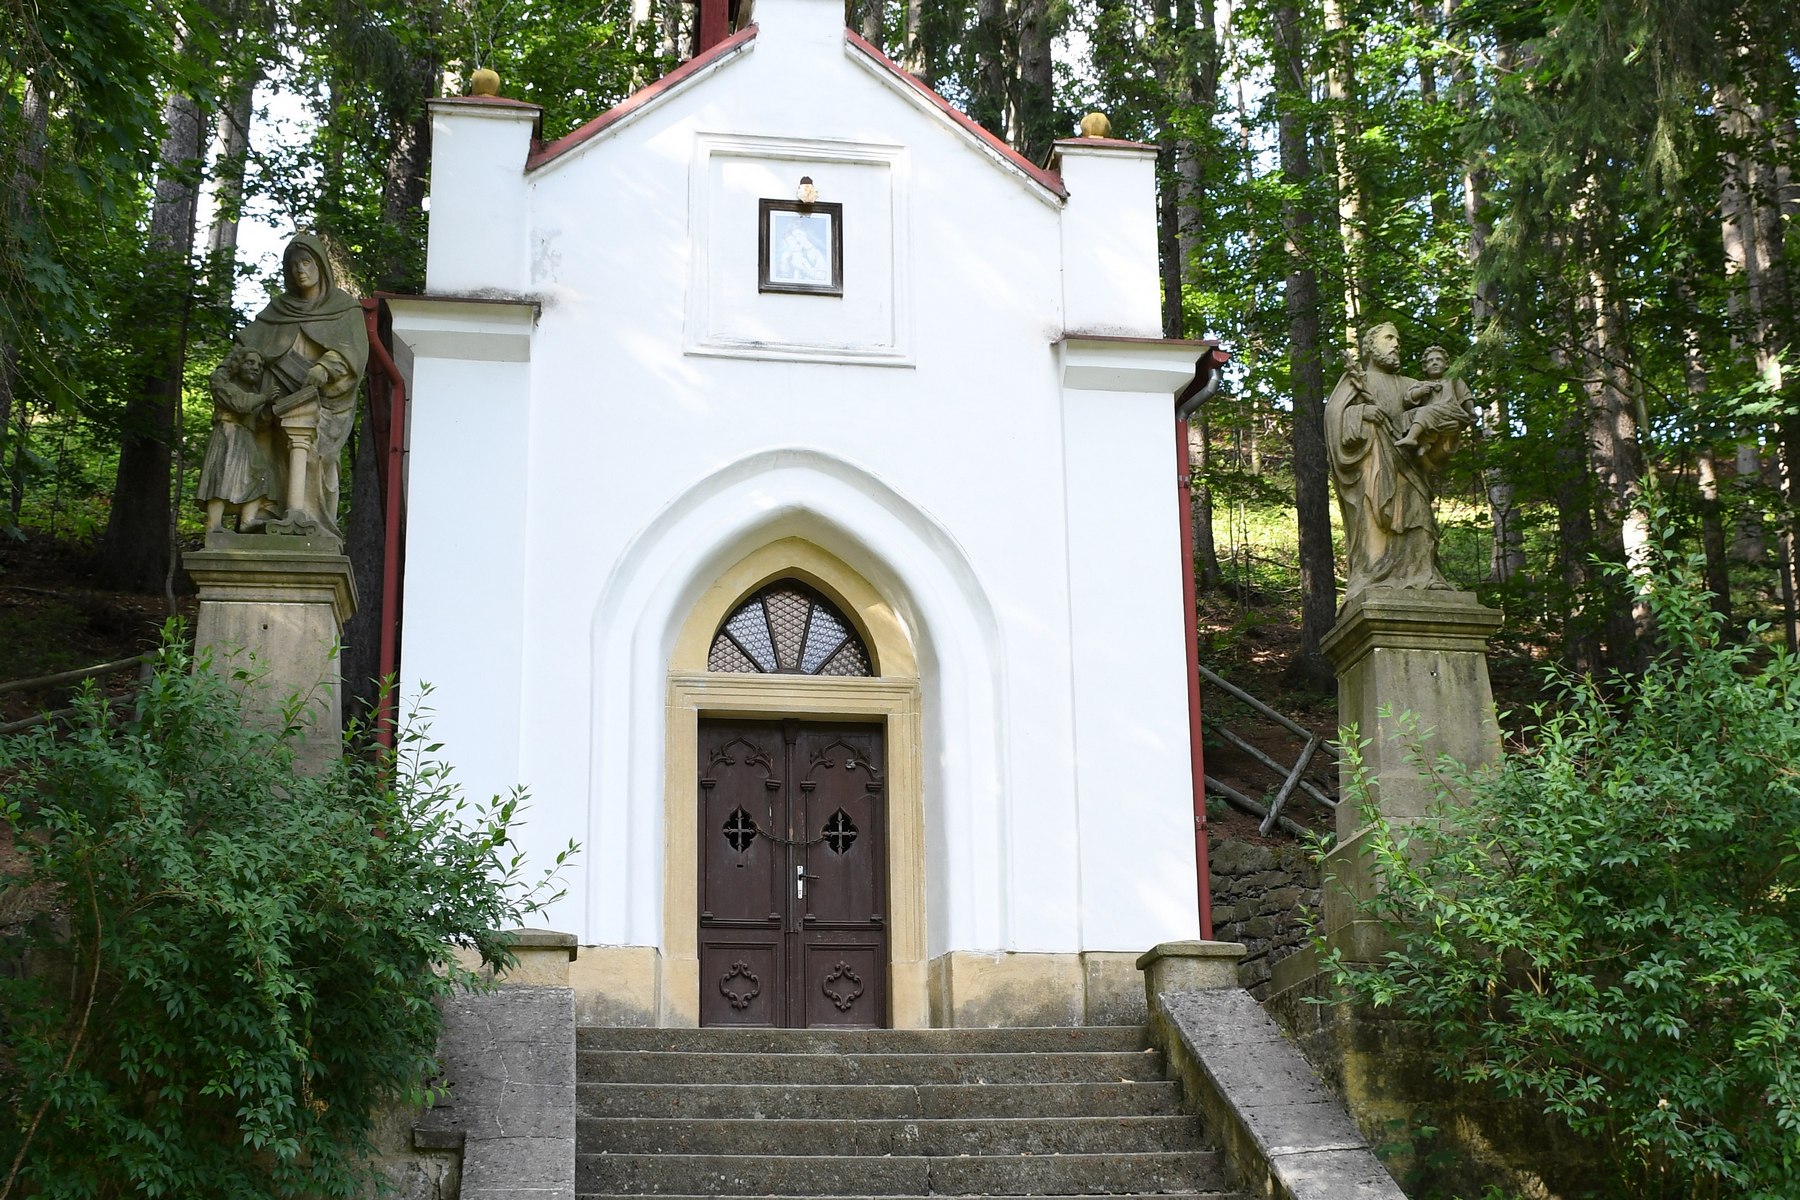 Lourdes en tchèque : Pourquoi l’église rejette-t-elle les observations à Suché Dol comme frauduleuses ?